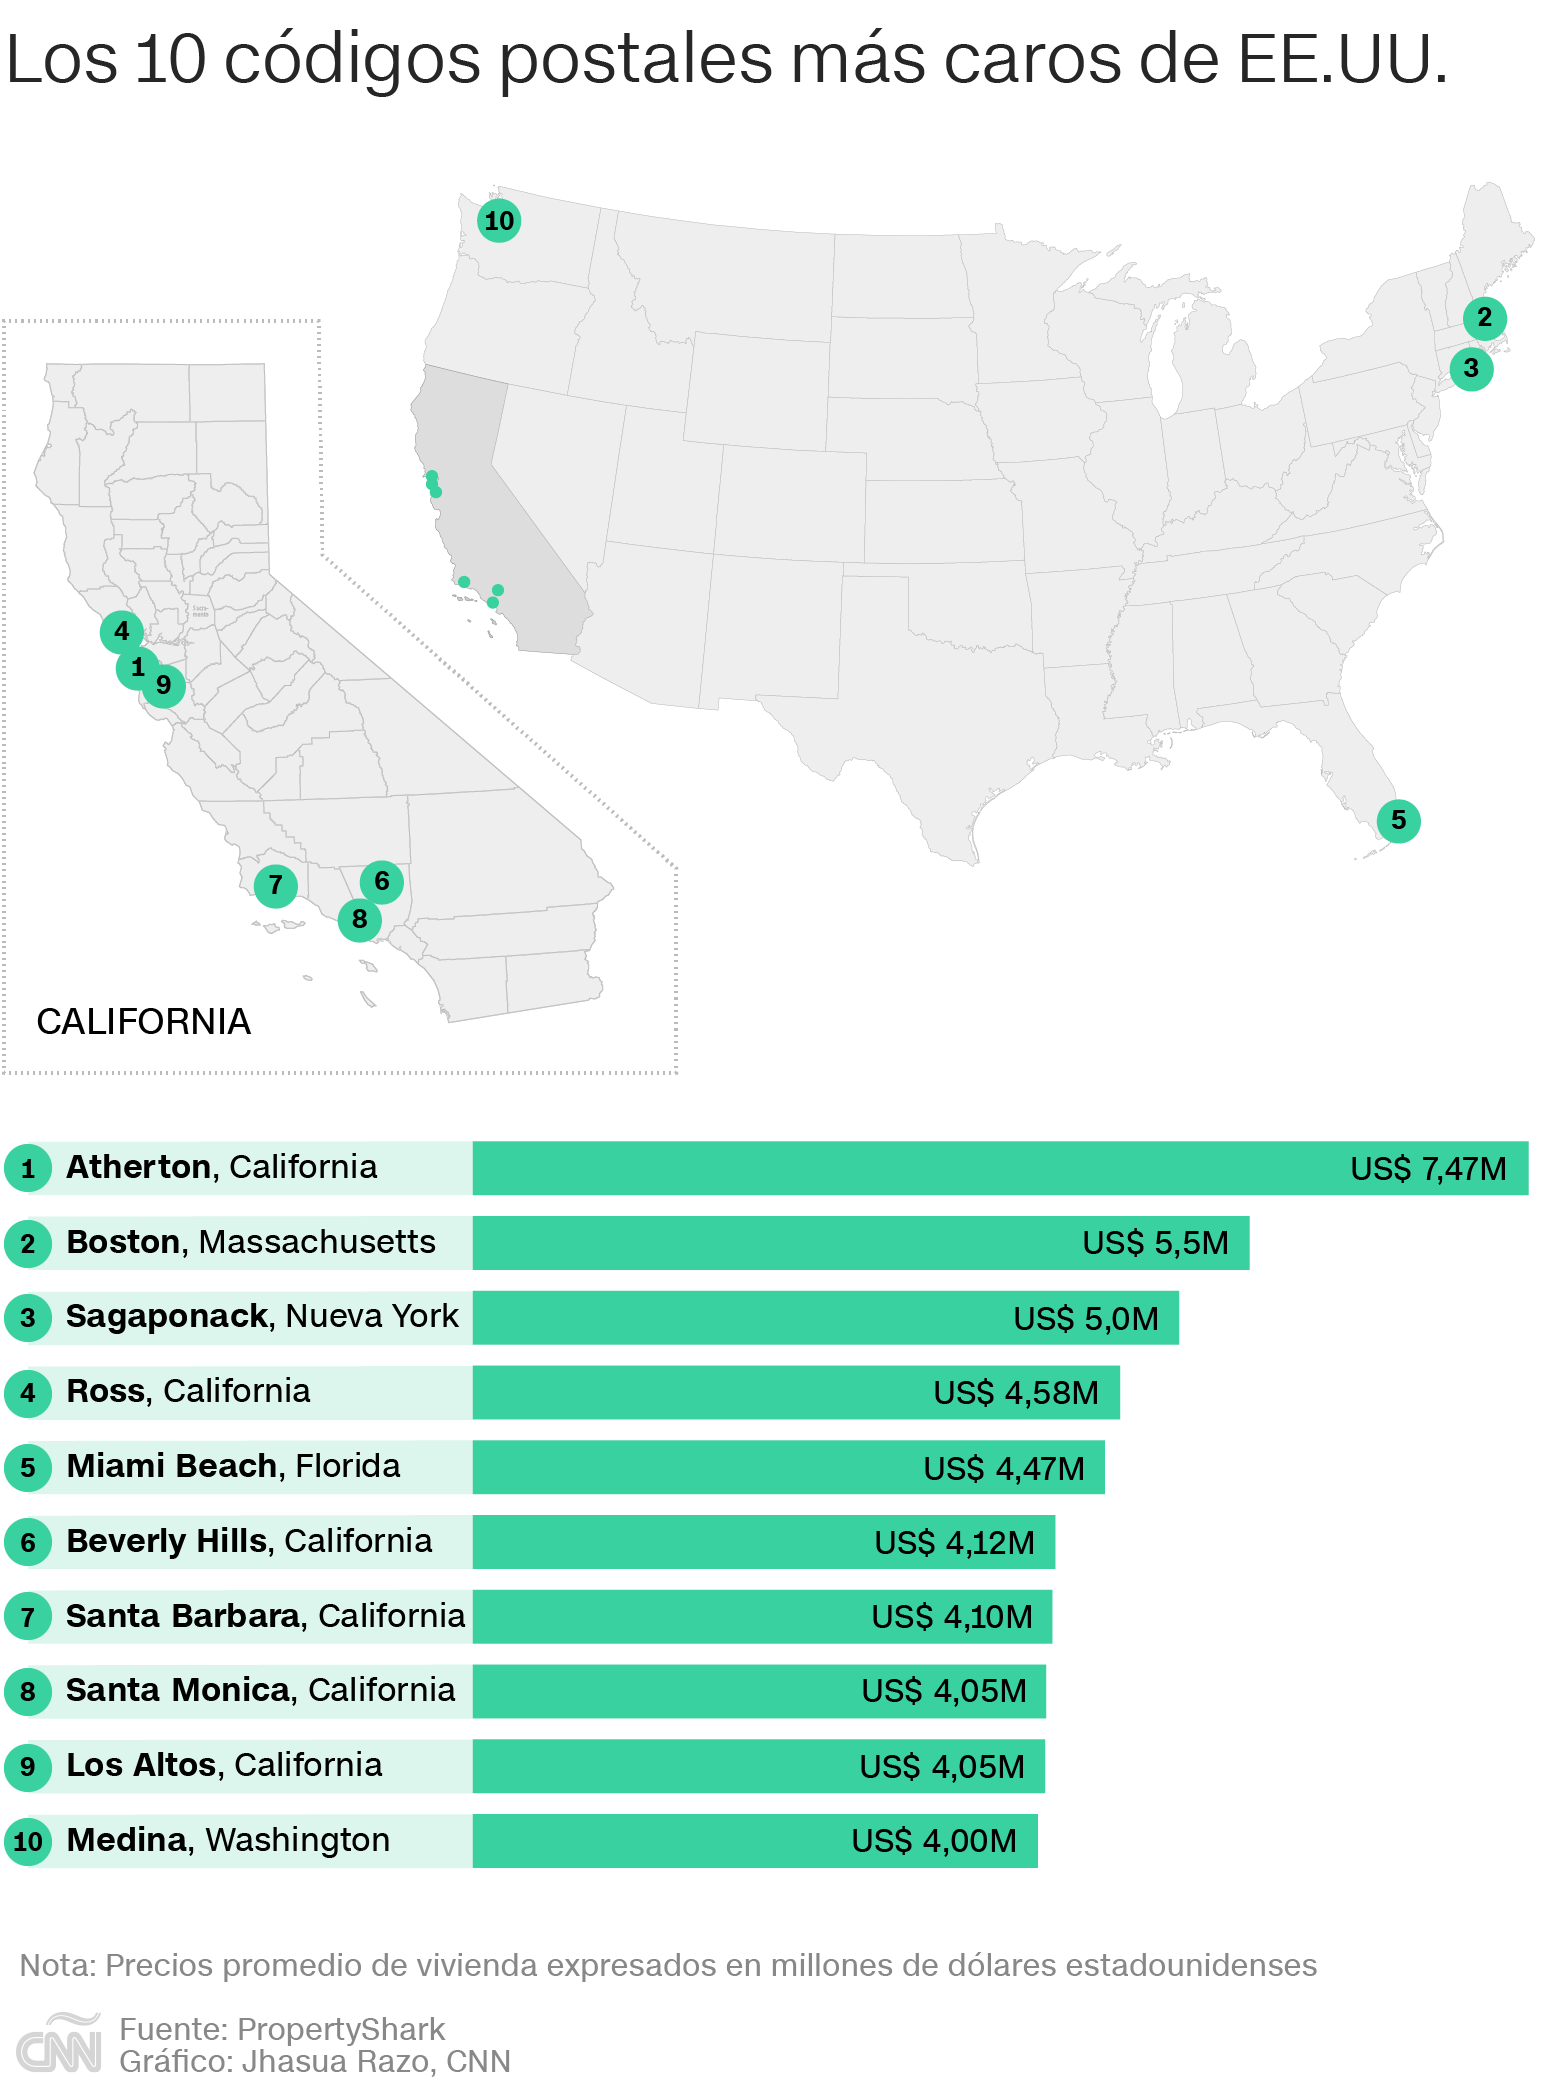 ¿Cuál es el estado más caro para vivir en Estados Unidos